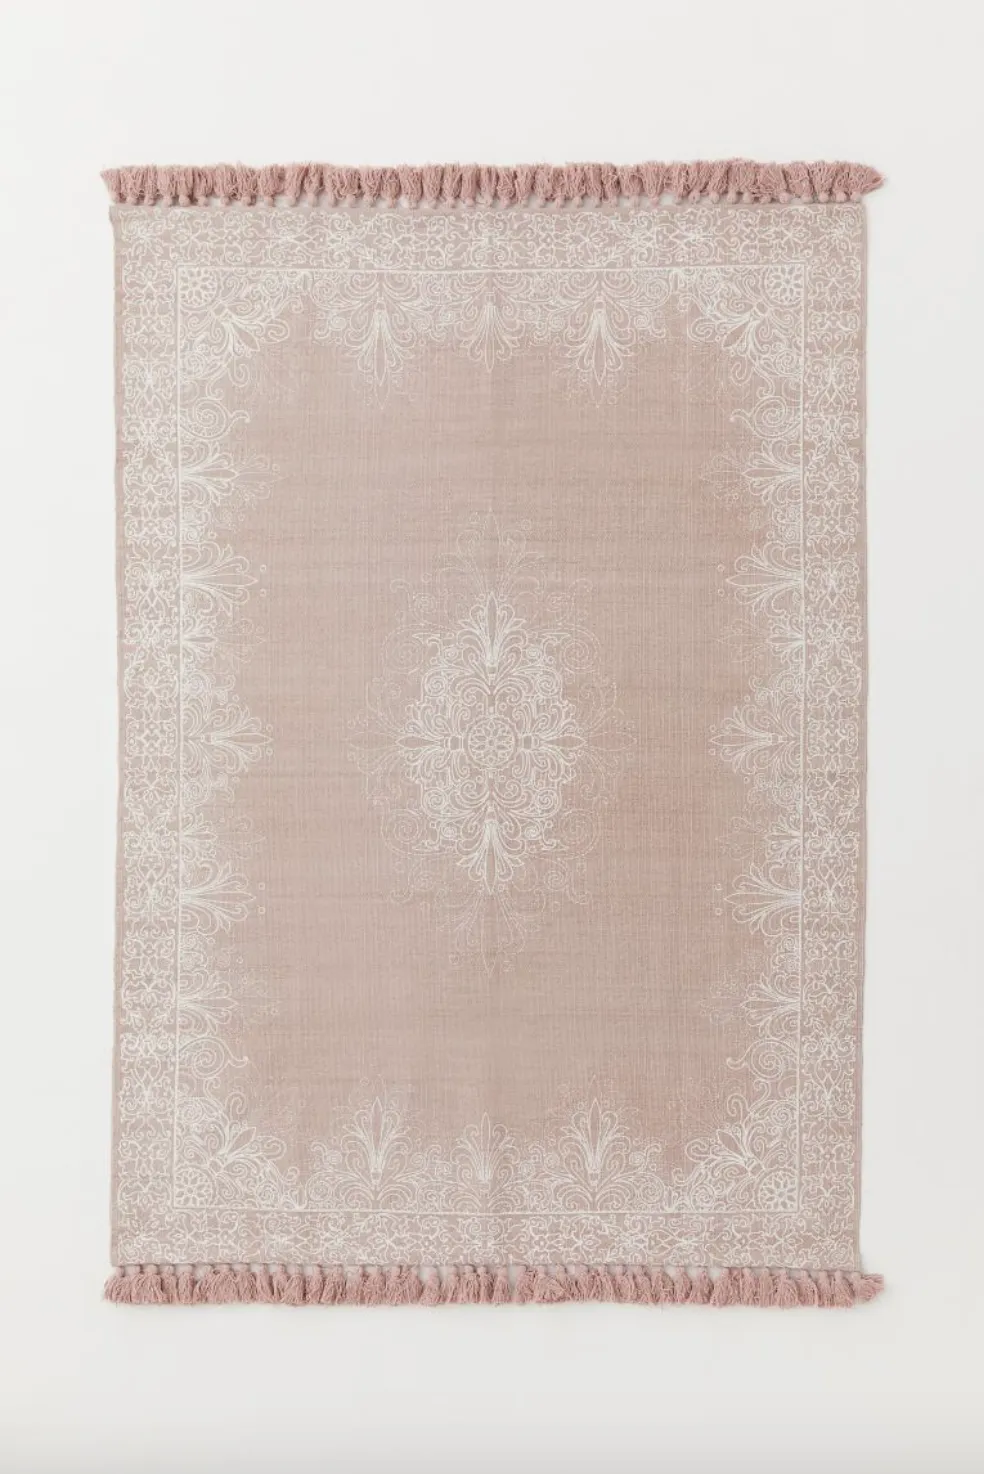 Tasselled cotton rug